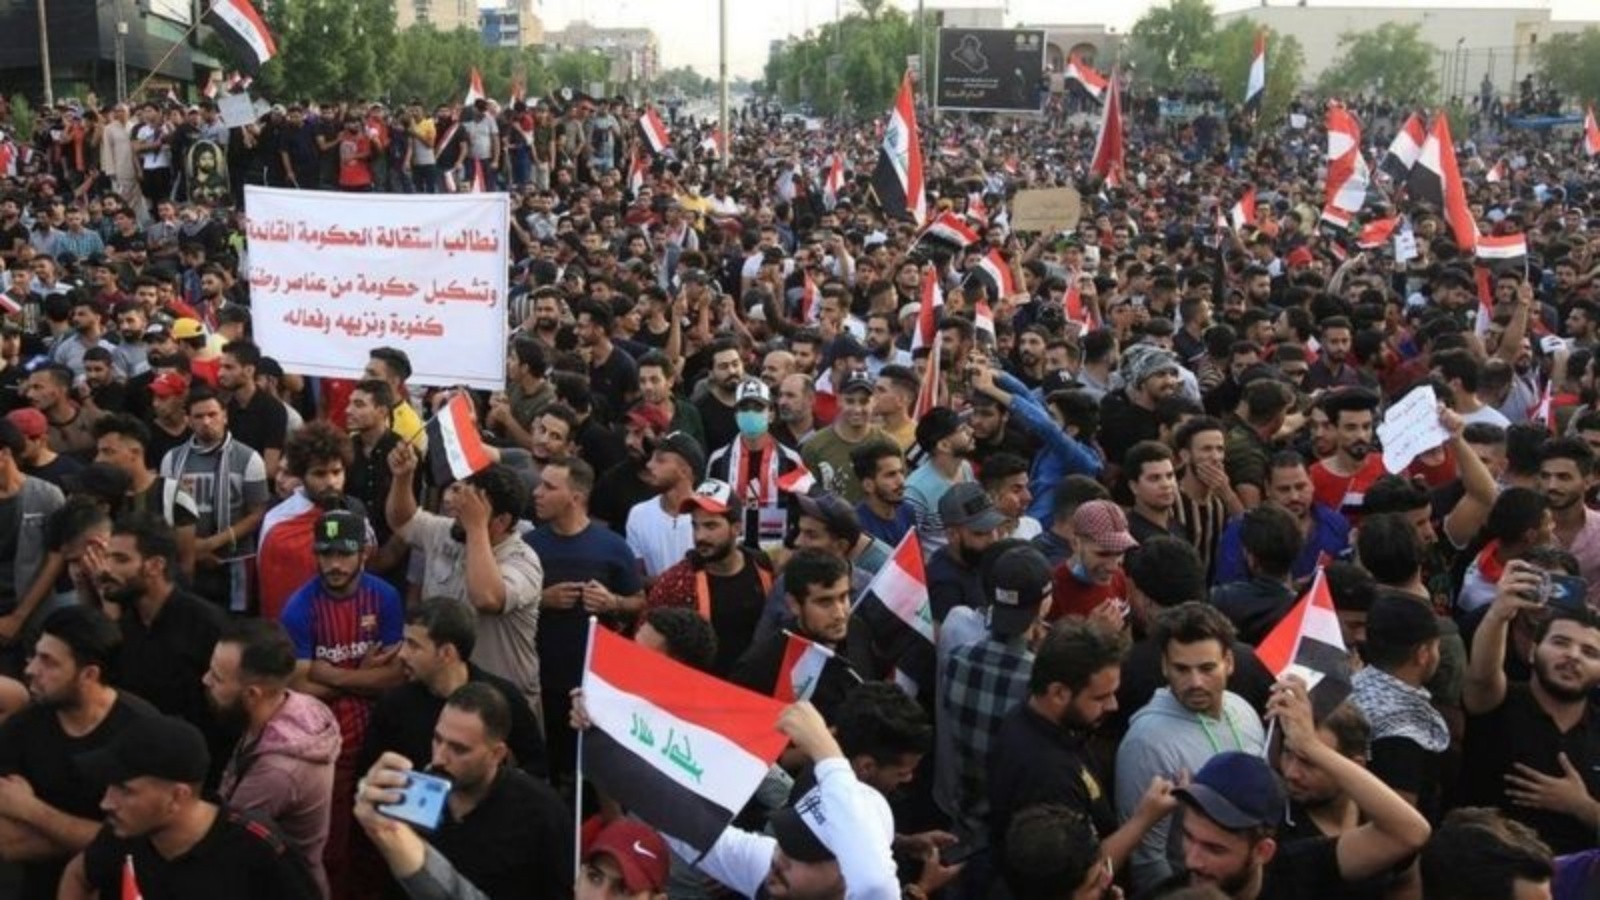 عراقيون يتظاهرون ضد الفساد خلال انتفاضتهم التي اندلعت ازاخر عام 2019 وأسقطت الحكومة (أف ب)